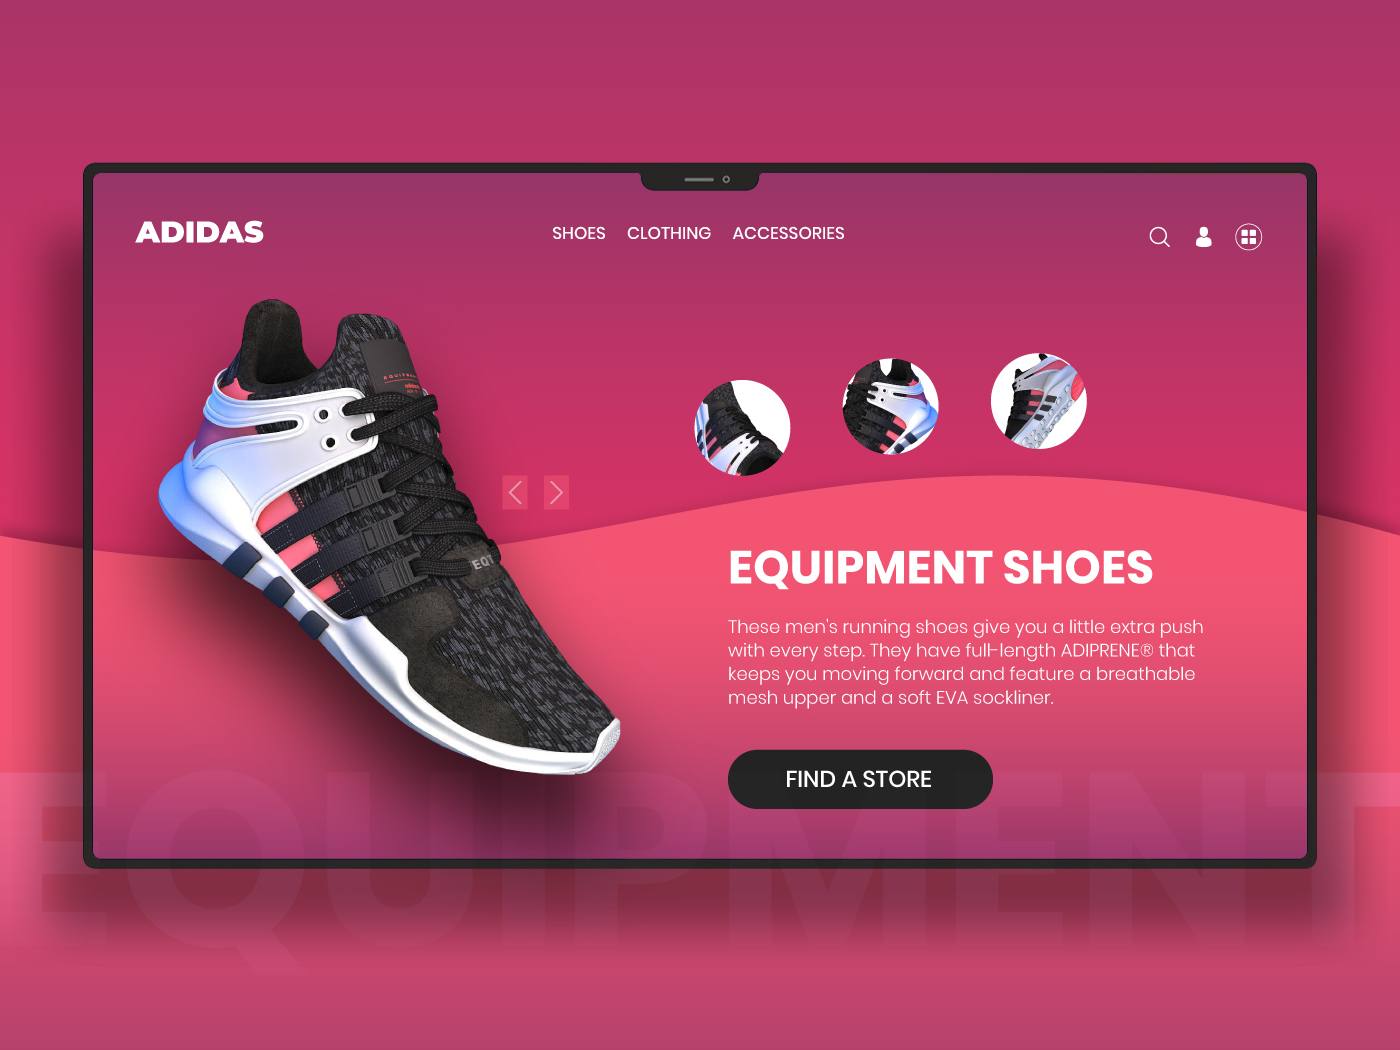 Adidas Online Store by Jayamani Nachiappan on Dribbble